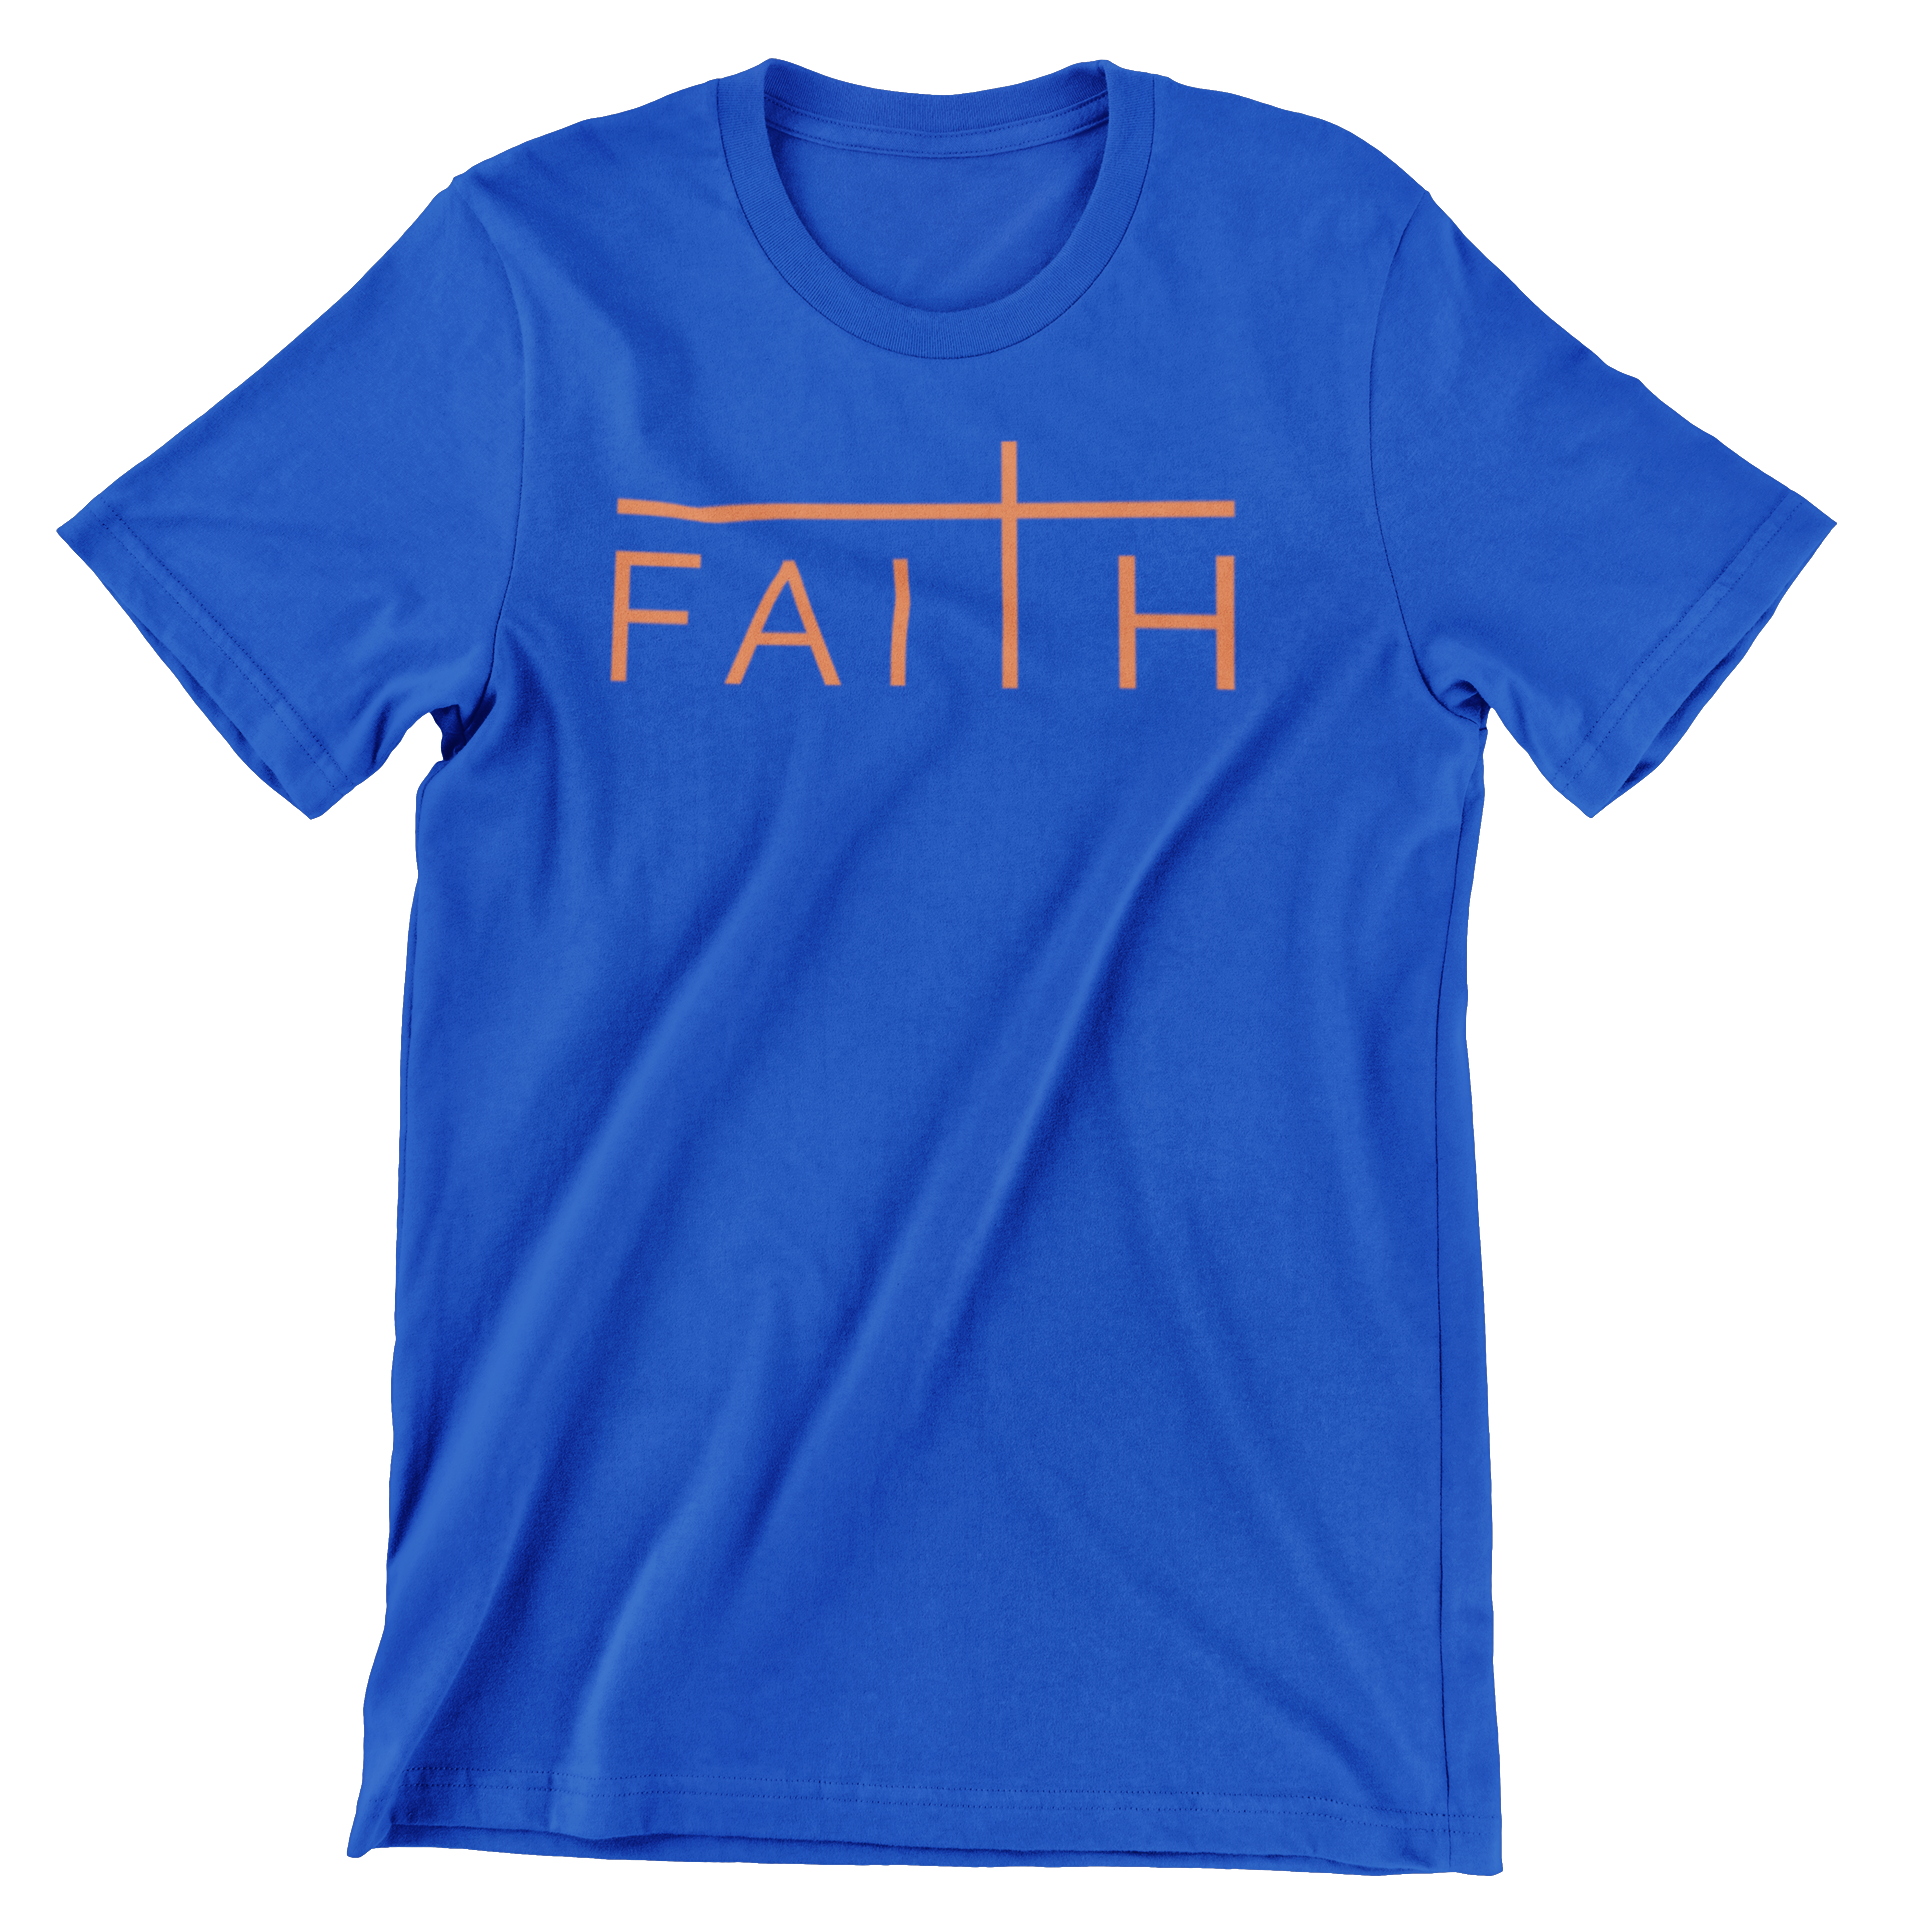 FAITH- ROYAL BLUE